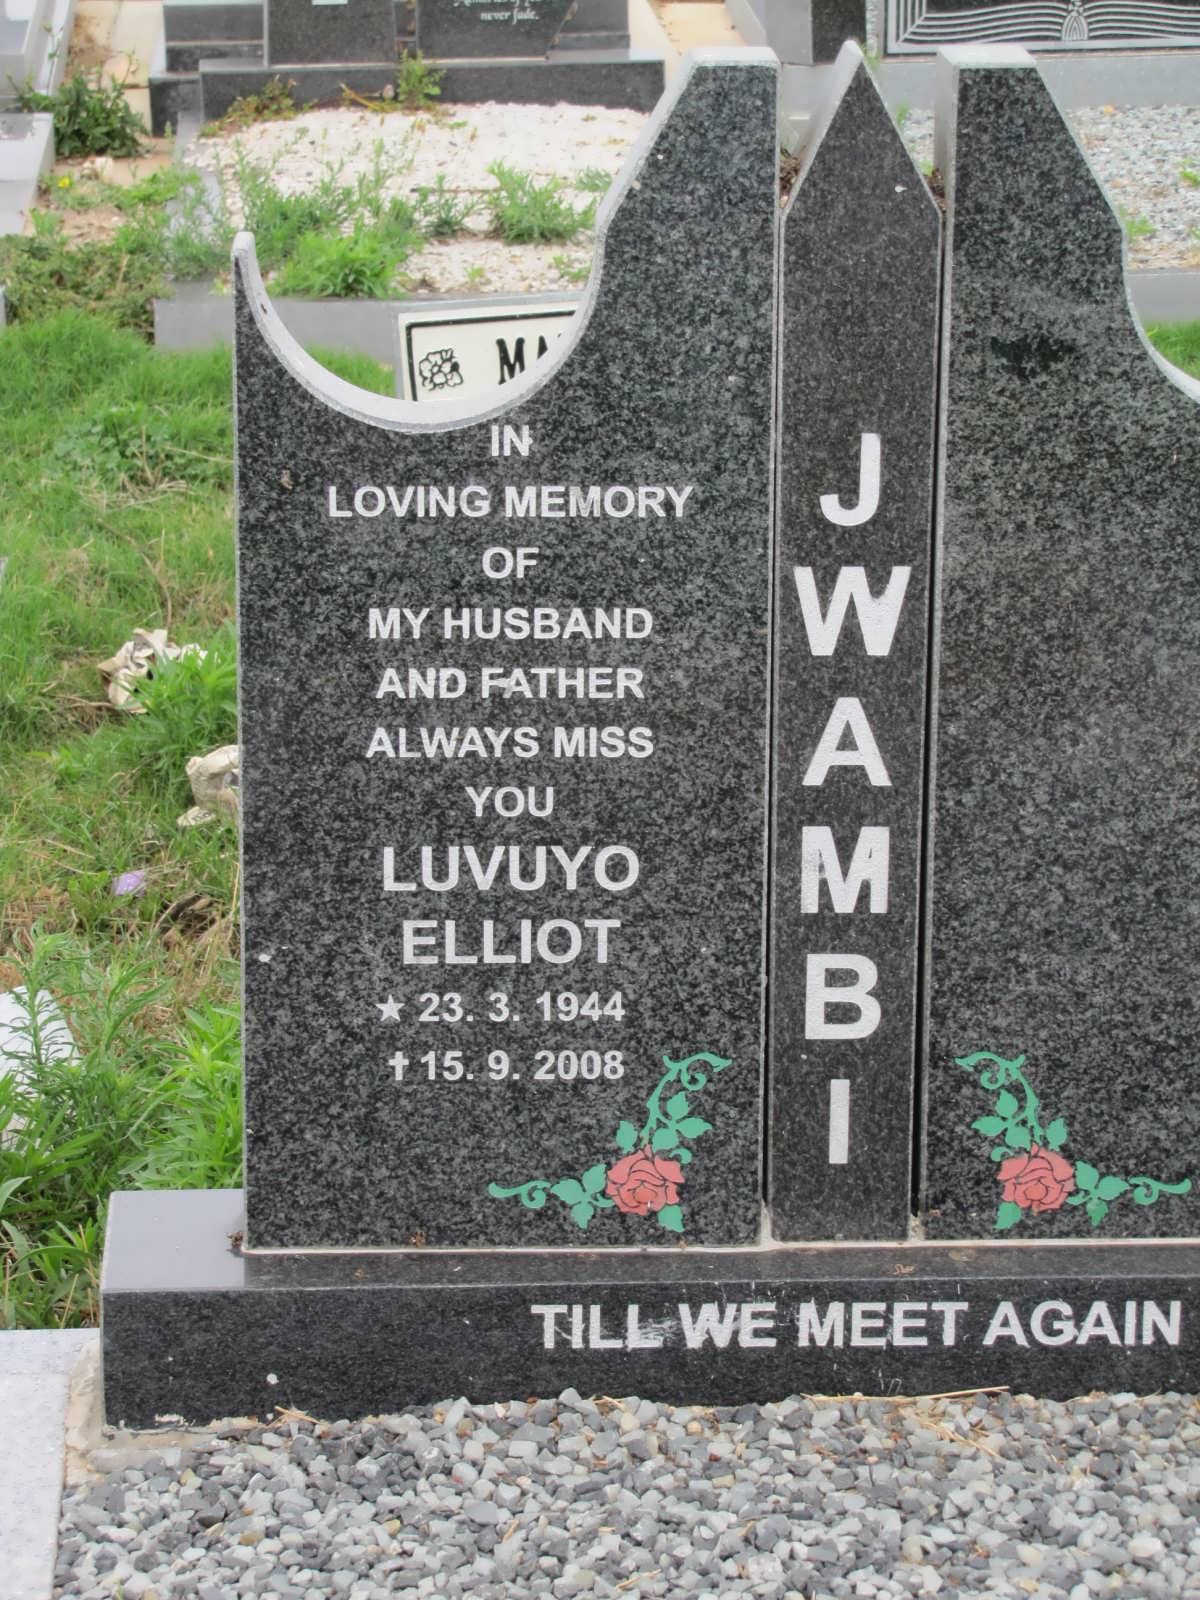 JWAMBI Luvuyo Elliot 1944-2008